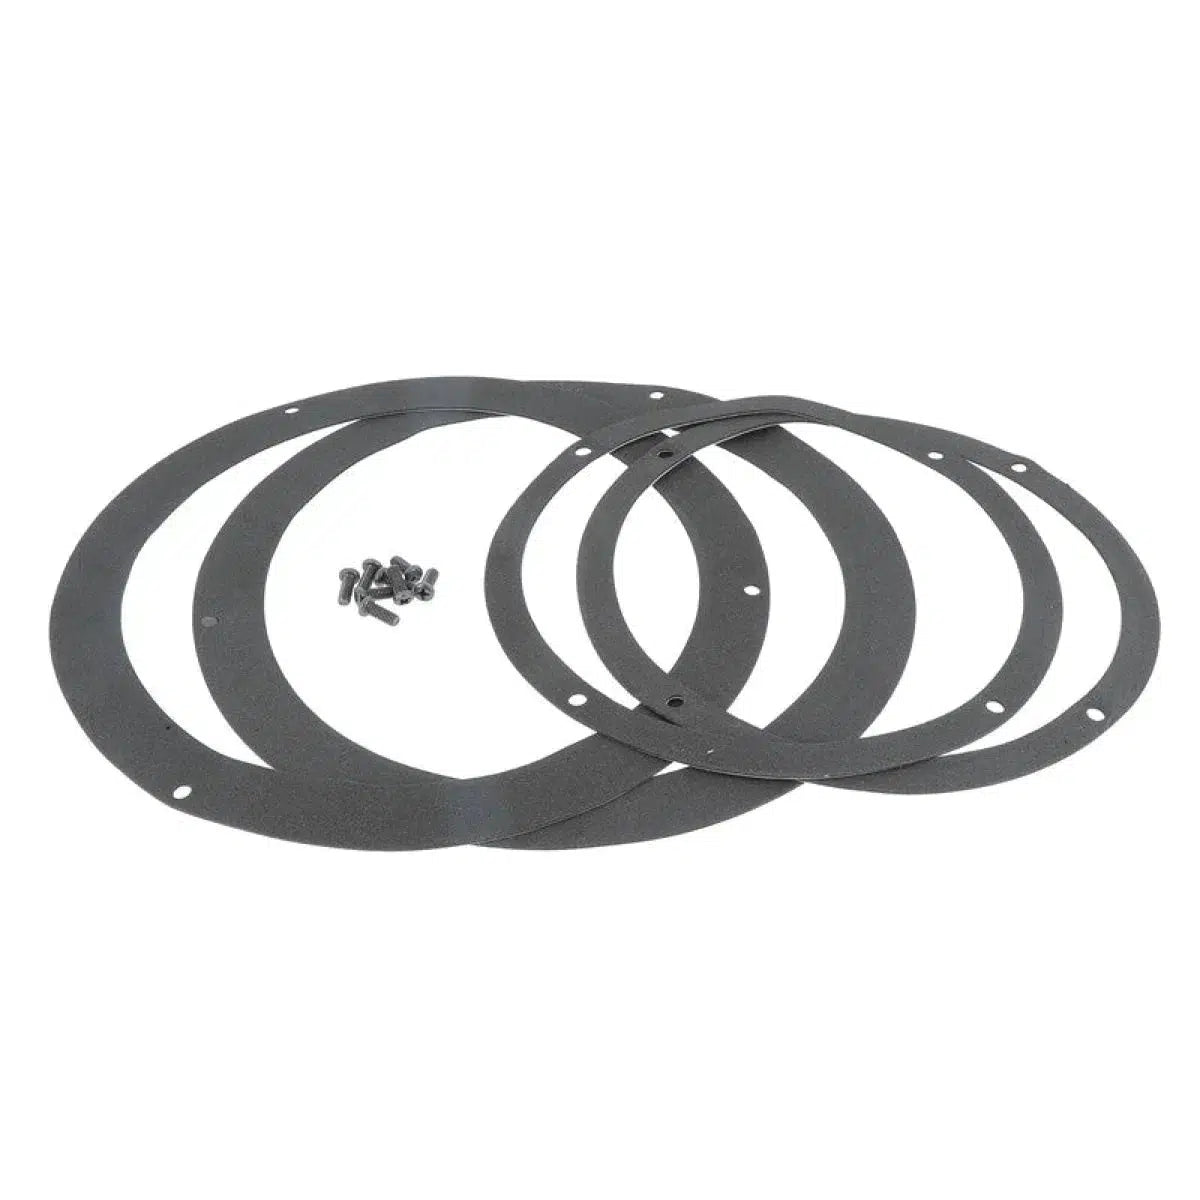 Masori-Aluring 165-21 Universel pour anneaux de haut-parleurs 6.5" (16,5cm)-Masori.fr